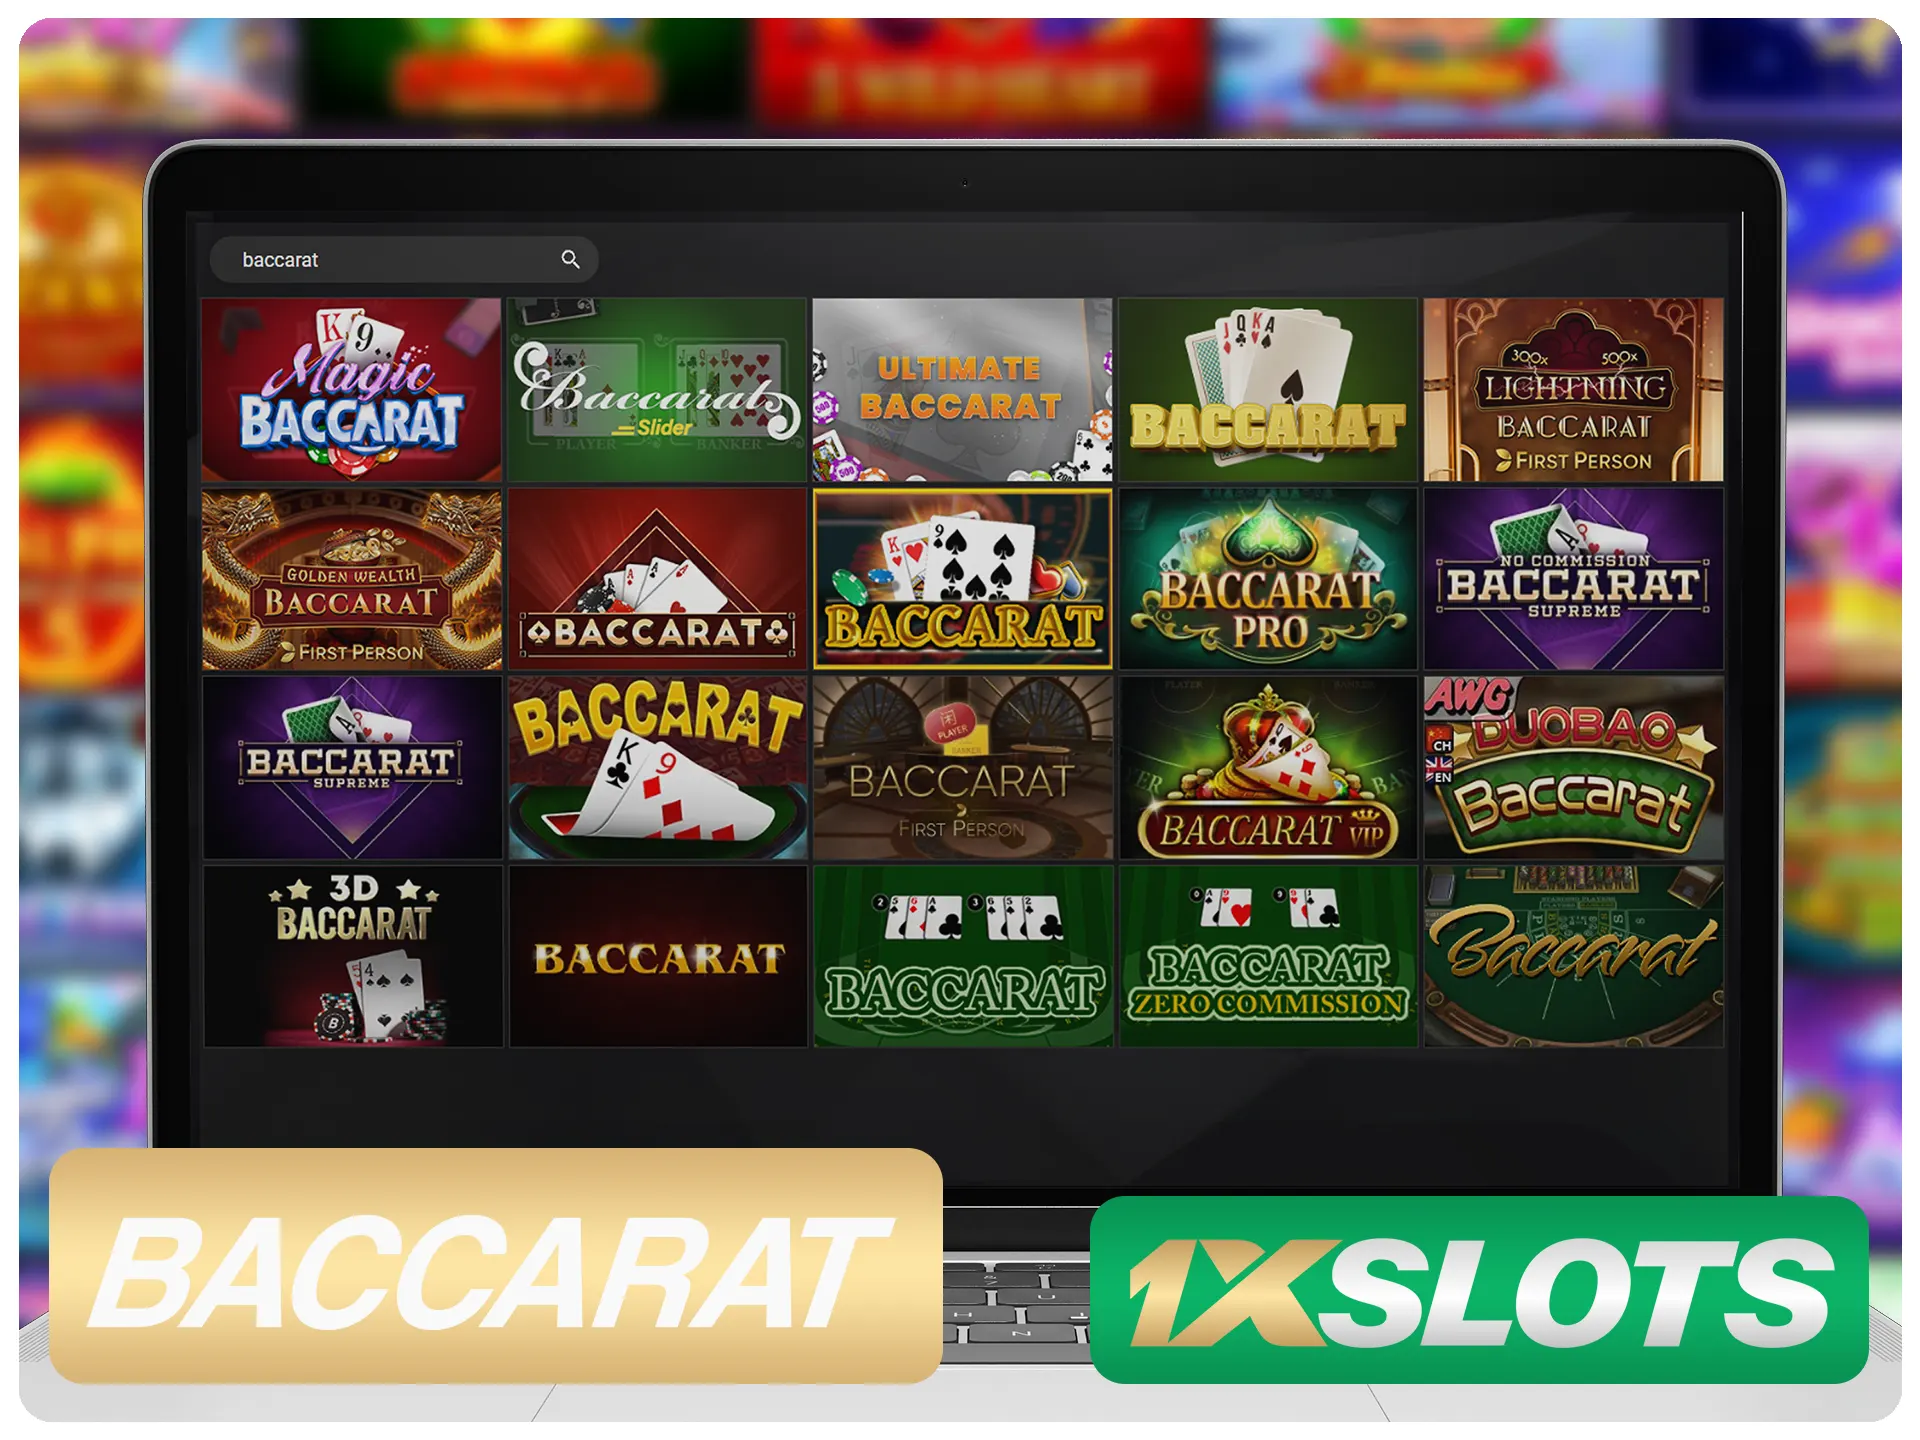 Play baccarat games at 1xSlots and win money.